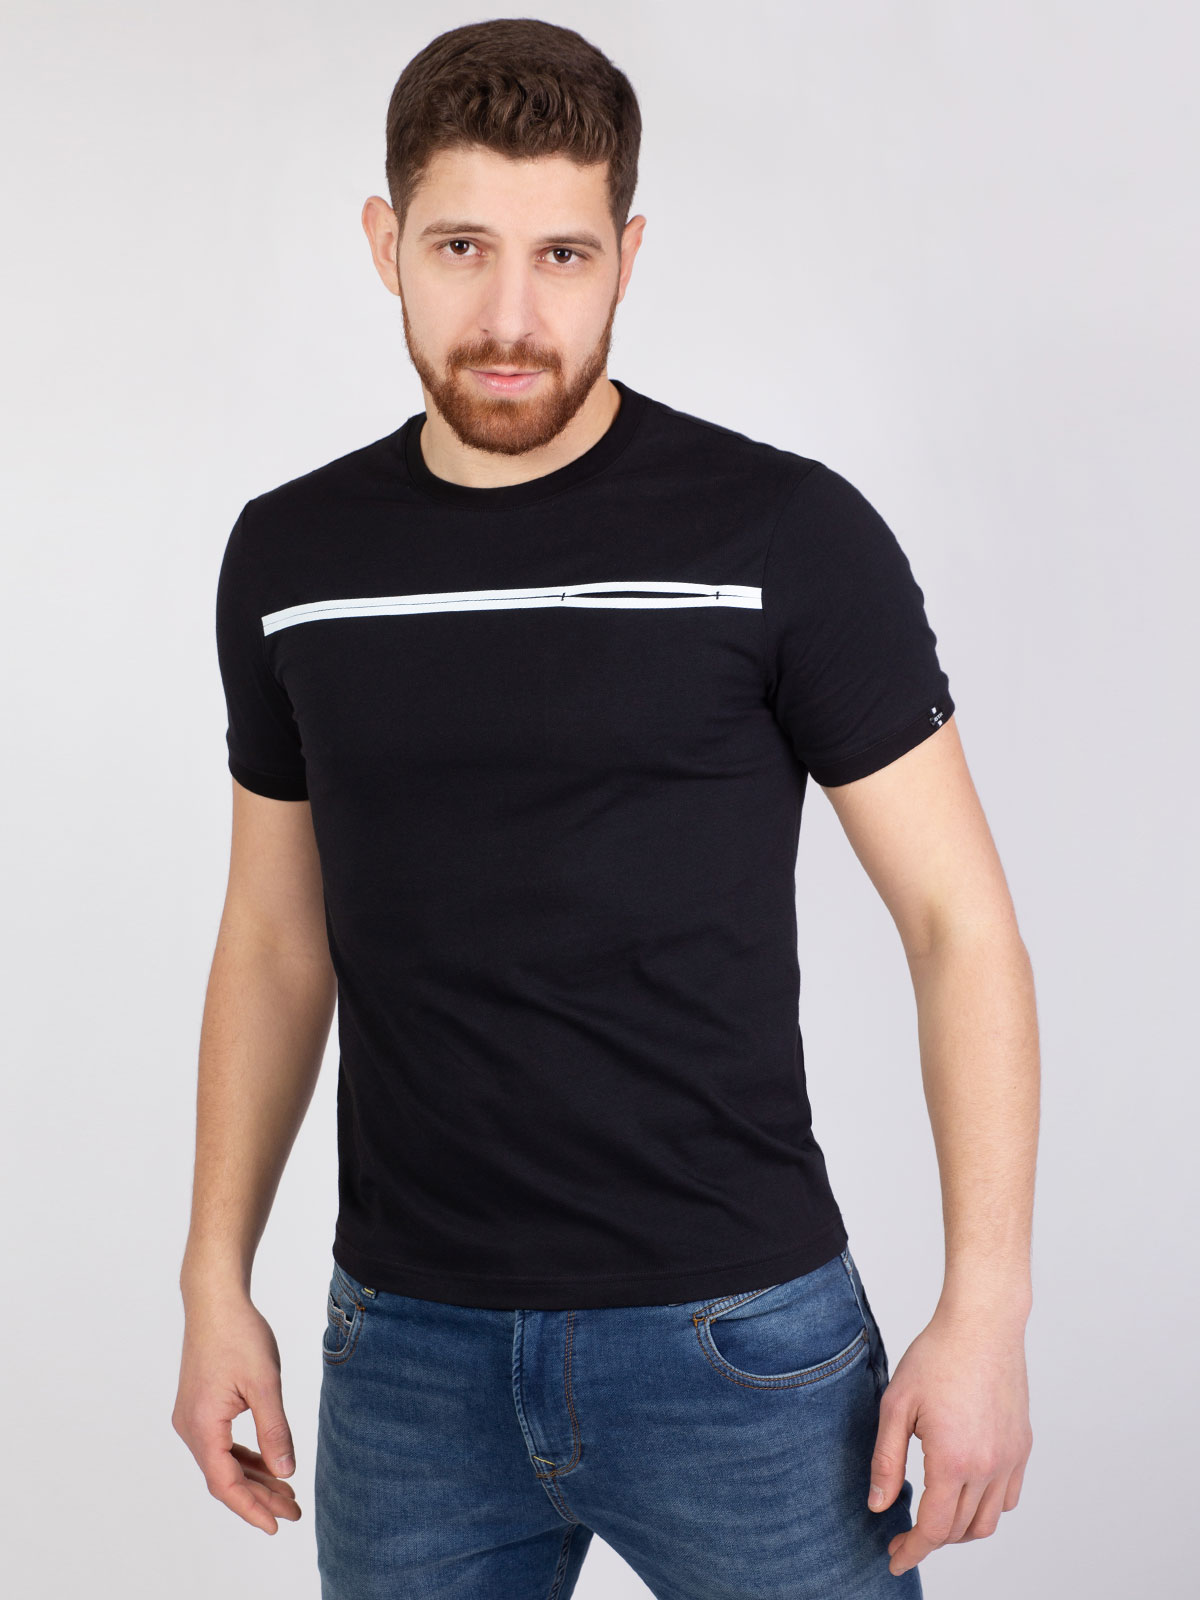 Μαύρο μπλουζάκι με λευκή στάμπα γραμμή - 96392 € 12.37 img4